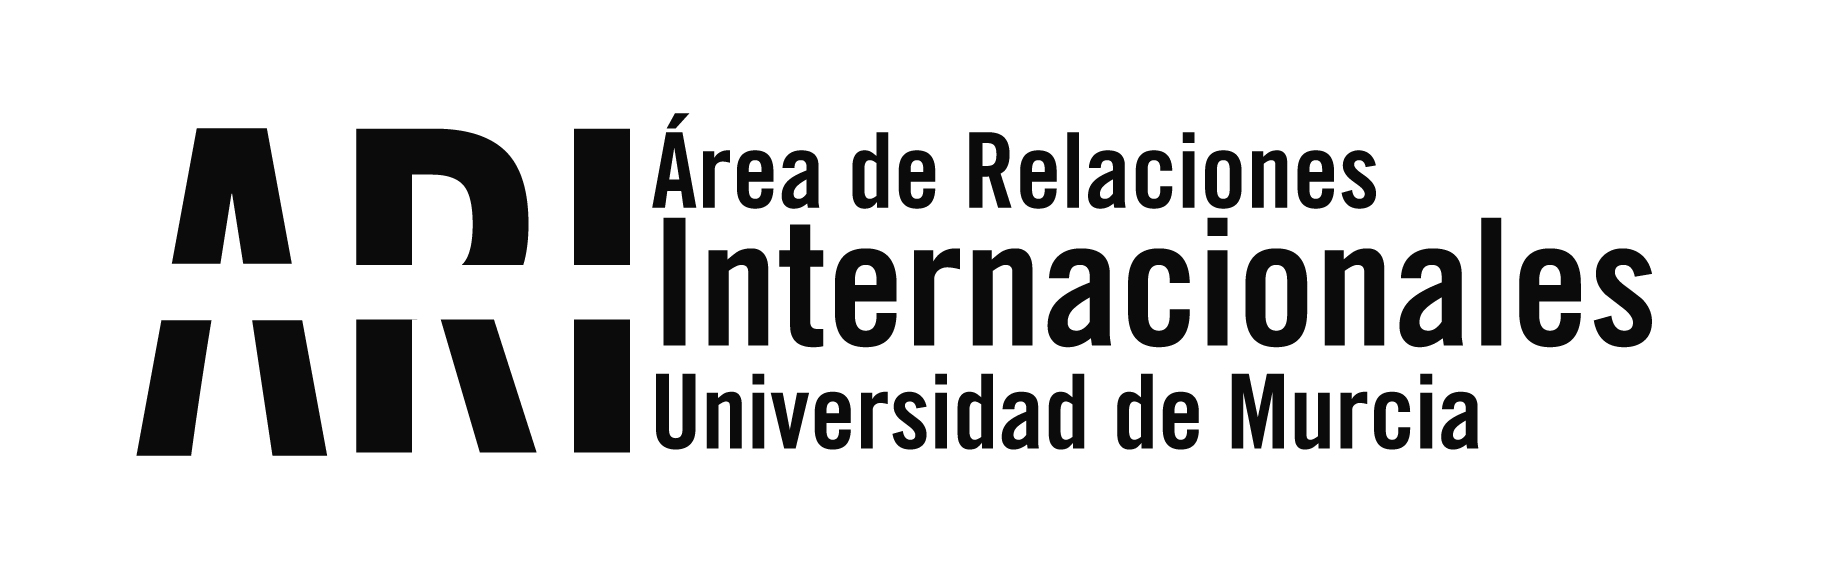 2014 - Eventos - Área de Relaciones Internacionales